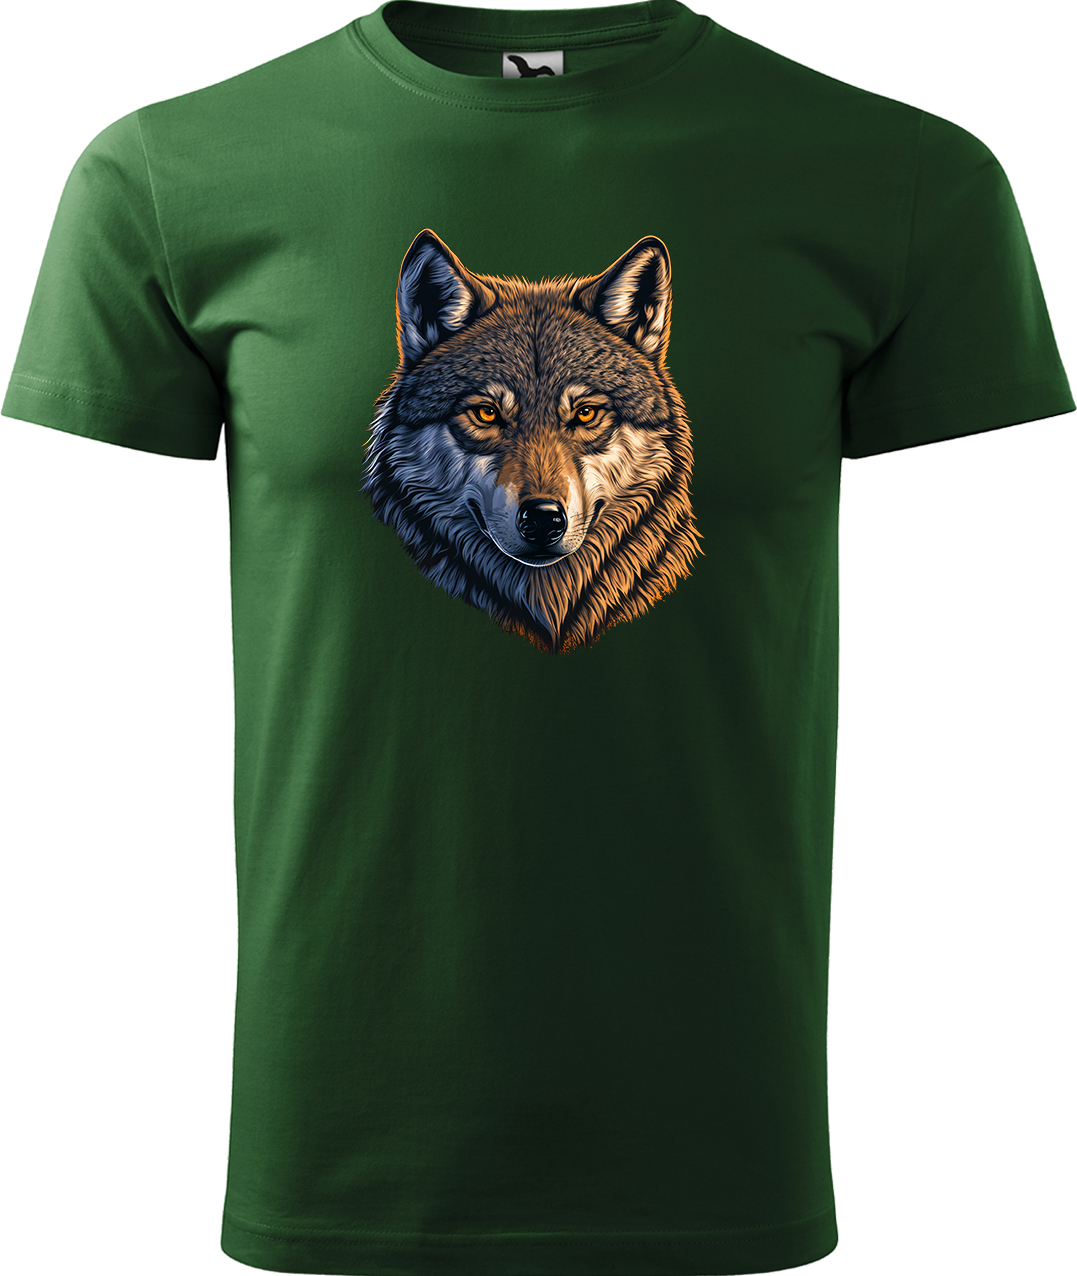 Pánské tričko s vlkem - Hlava vlka Velikost: L, Barva: Lahvově zelená (06), Střih: pánský